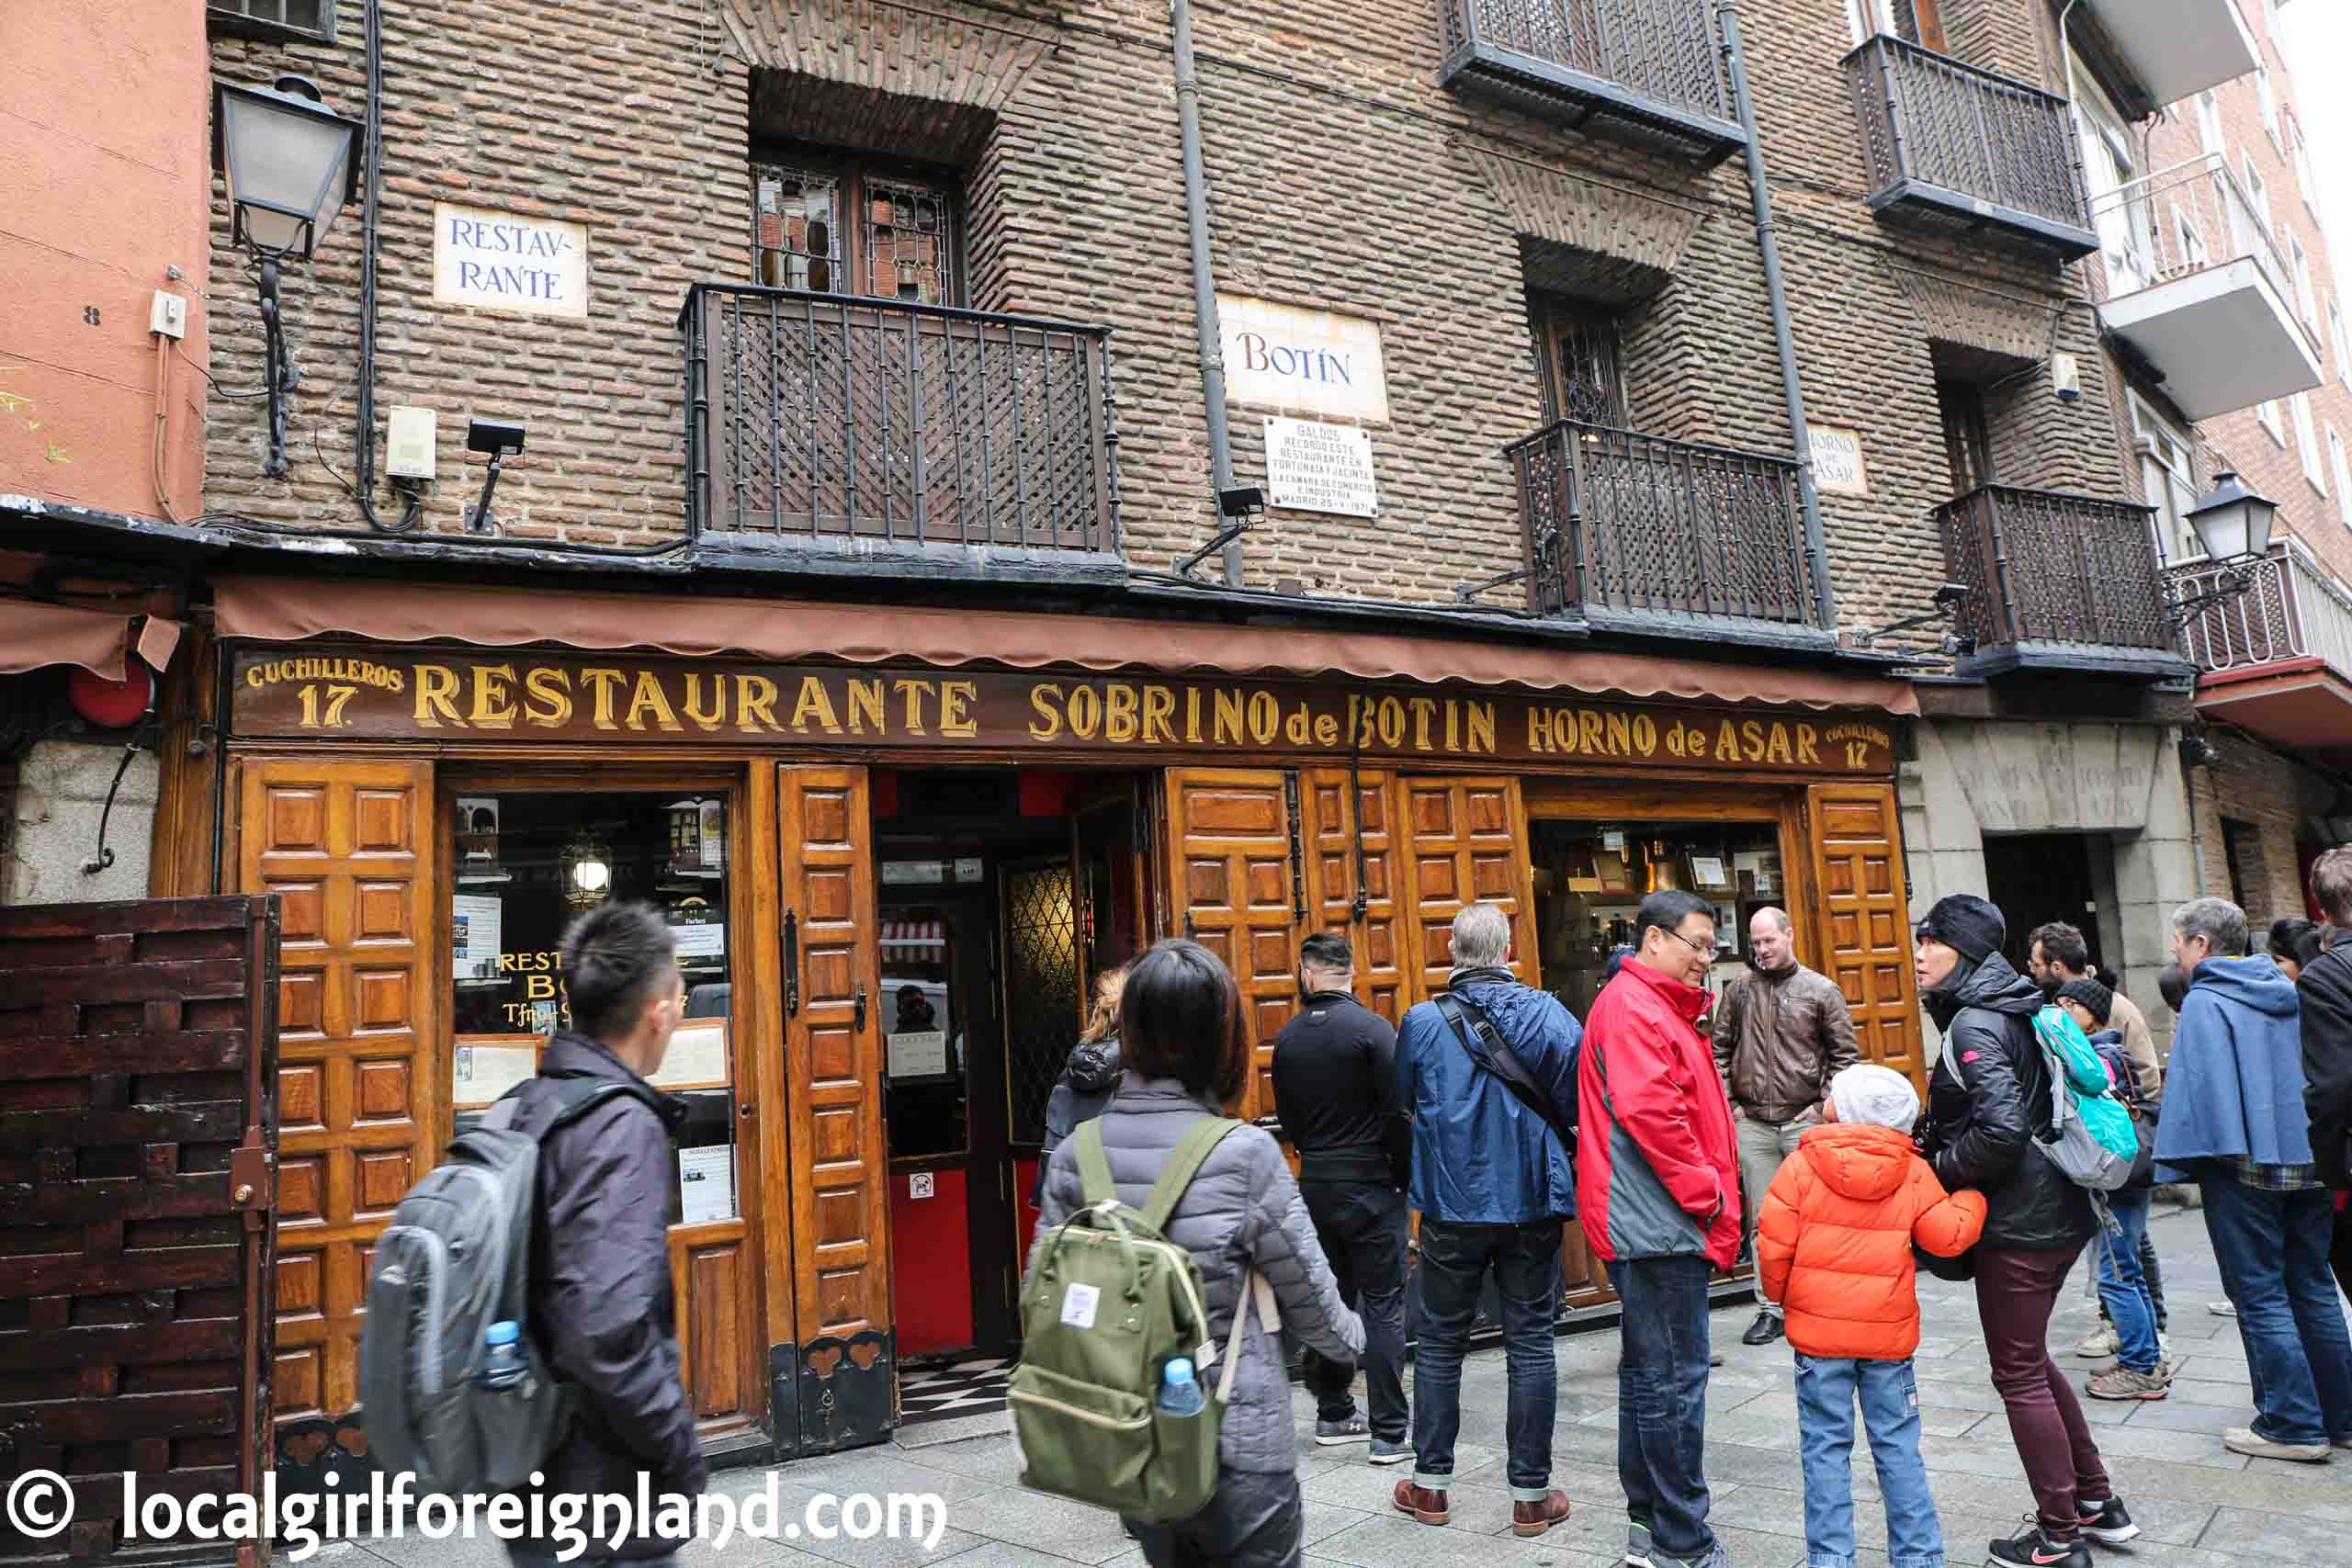 Restaurante Botín located at 17 Calle Cuchilleros. The world's oldest restaurant 1725.